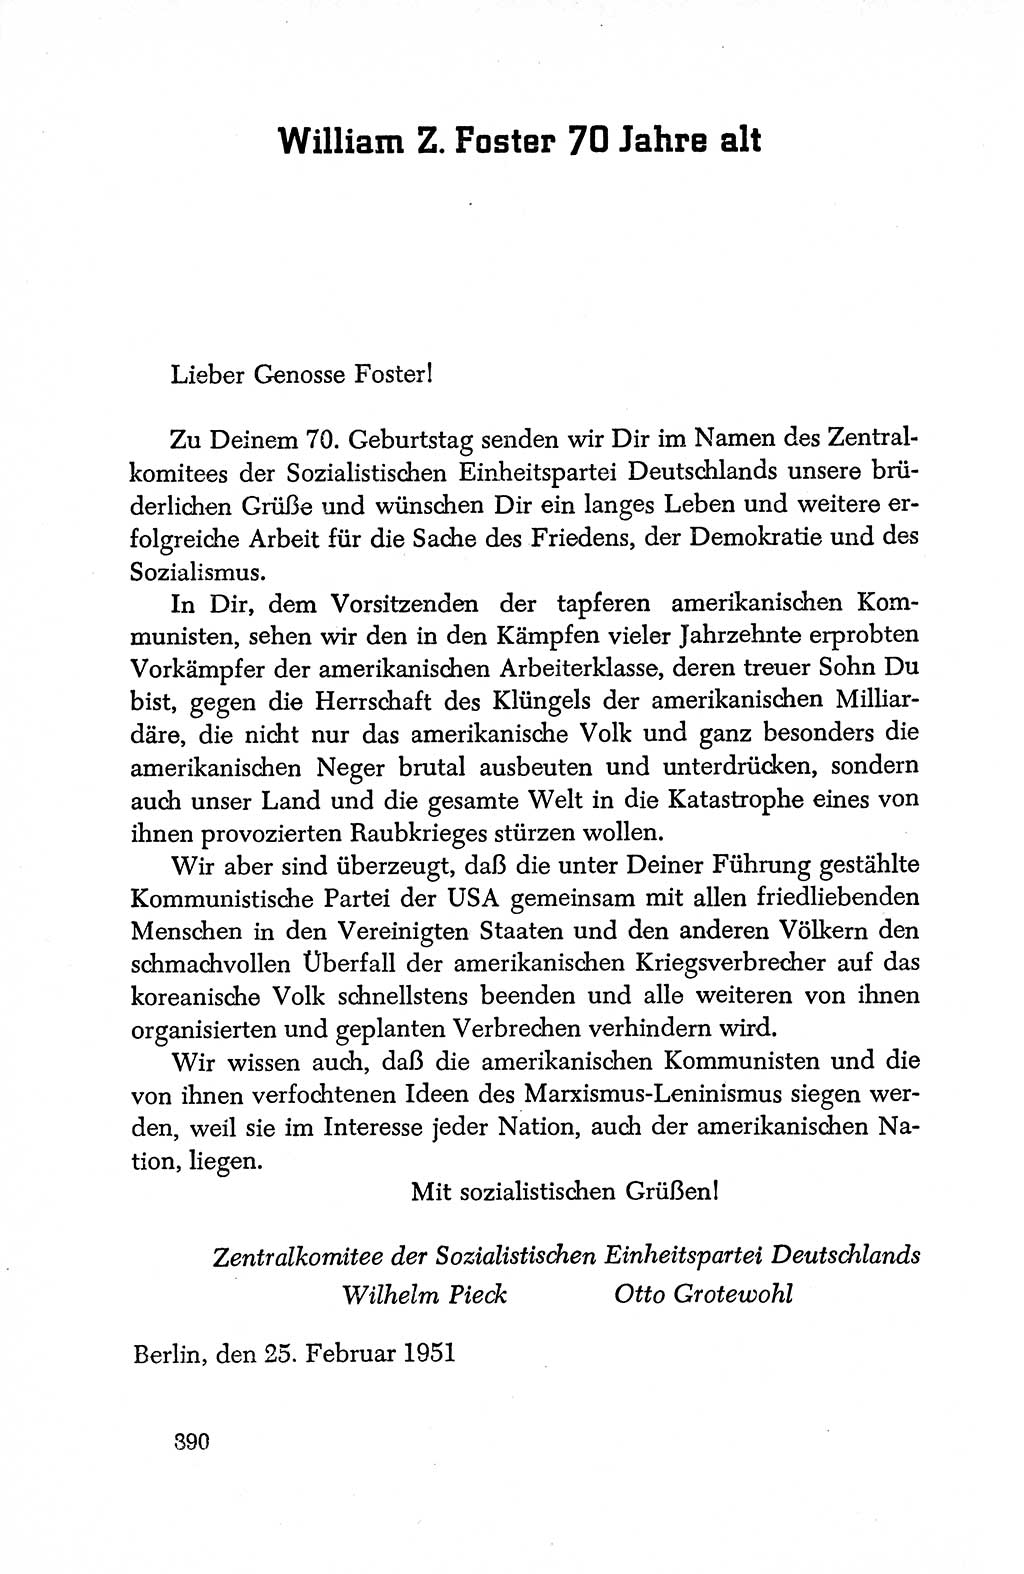 Dokumente der Sozialistischen Einheitspartei Deutschlands (SED) [Deutsche Demokratische Republik (DDR)] 1950-1952, Seite 390 (Dok. SED DDR 1950-1952, S. 390)